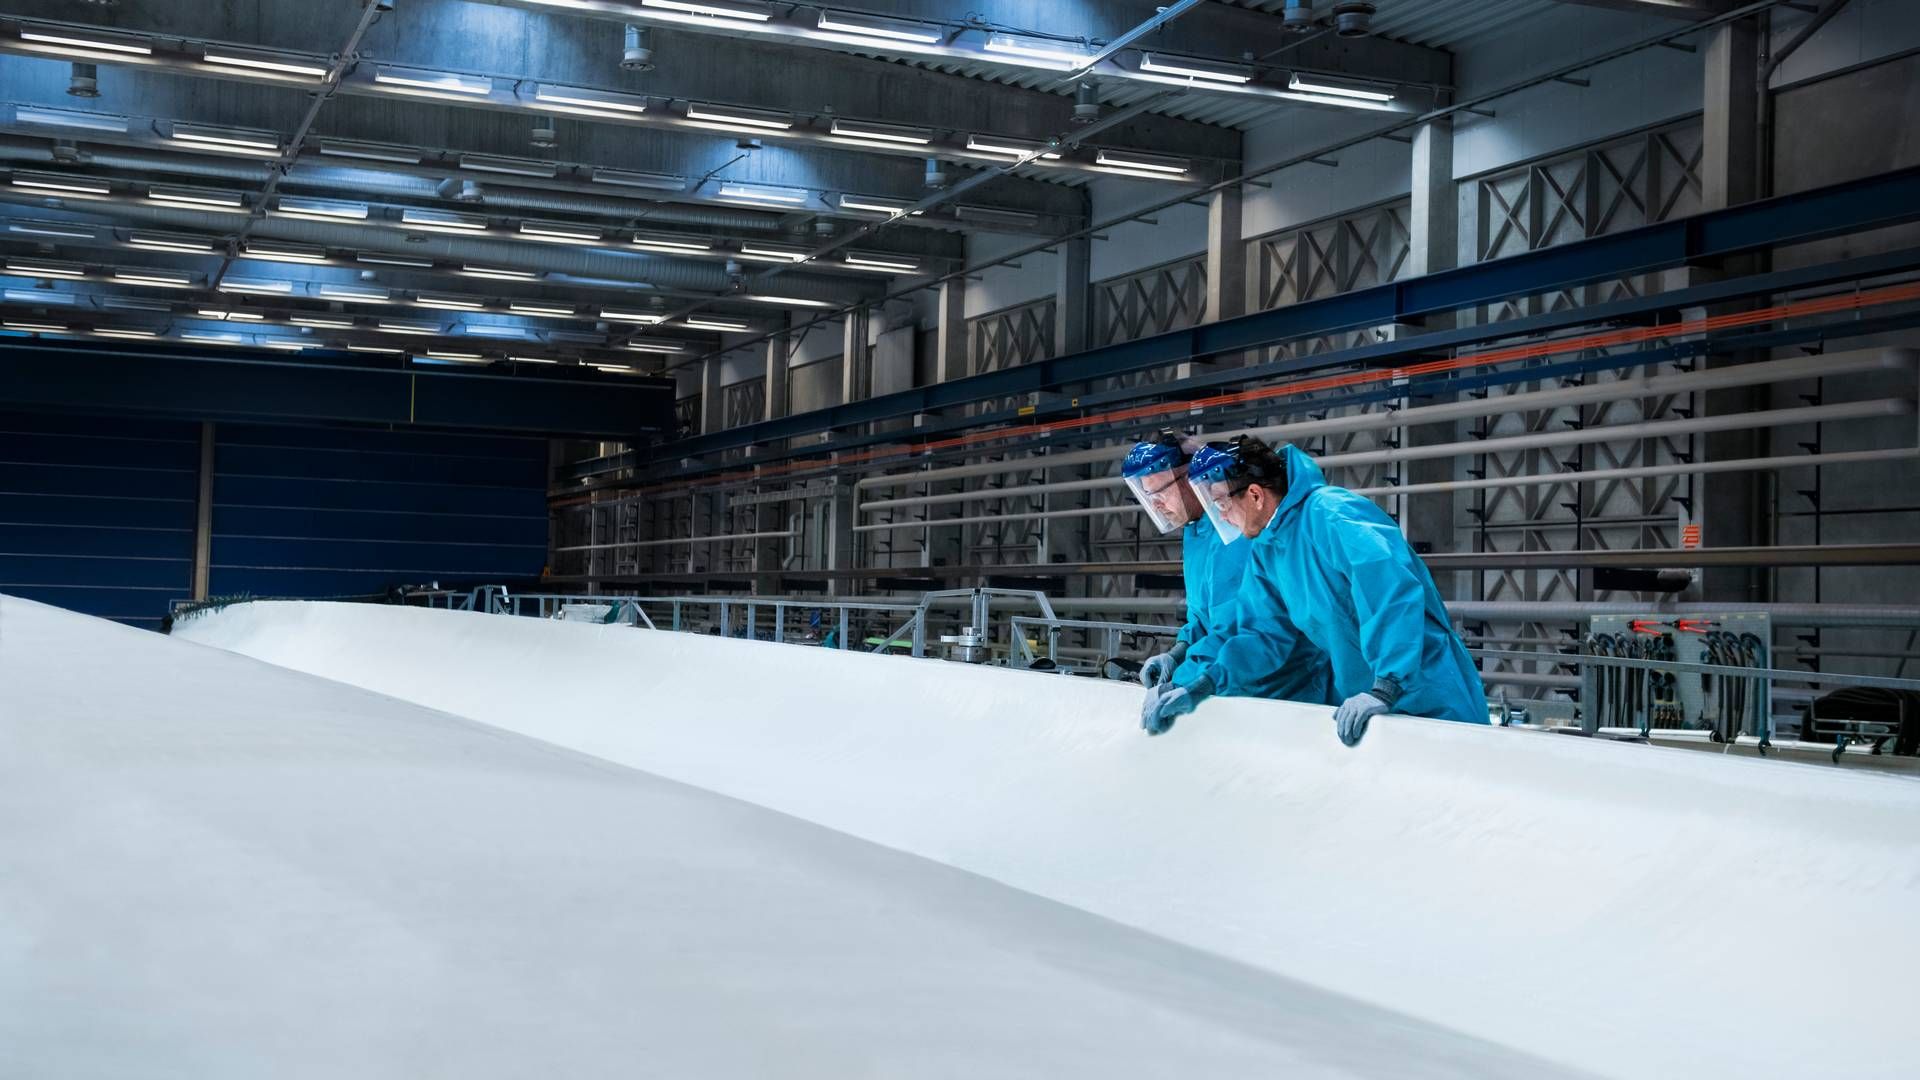 RESIRKULERINGSGJENNOBRUDD: Den danske vindturbinprodusenten Vestas har gjort et nytt funn som førte til en helt ny resirkuleringsmetode for vingeblandene på deres vindturbiner. | Foto: Vestas